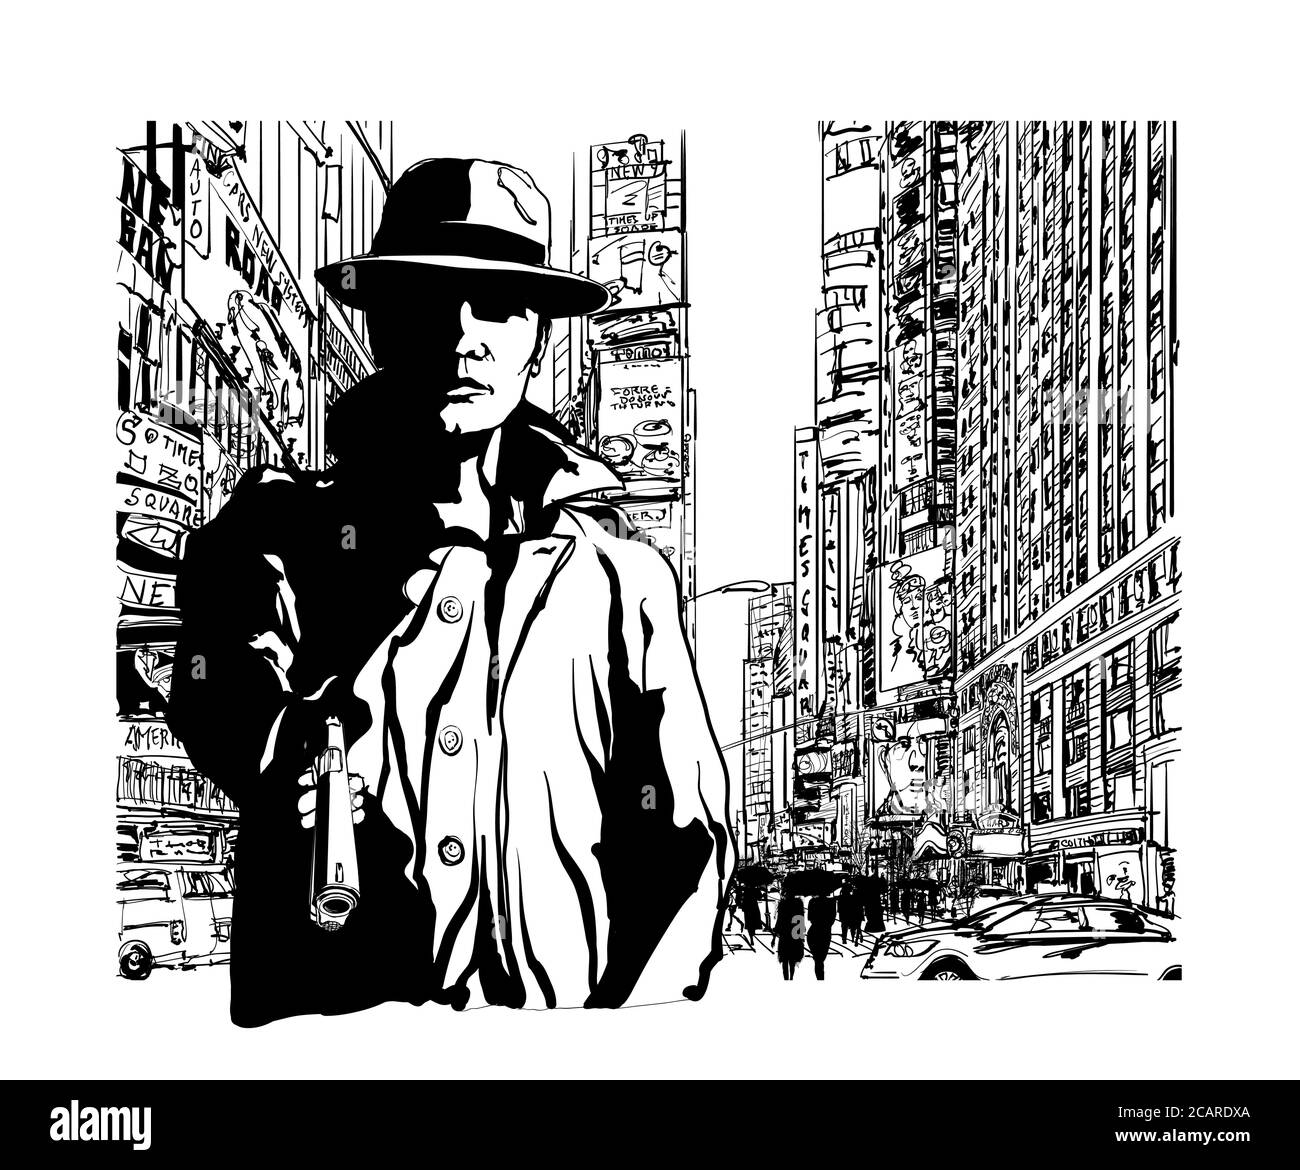 Gangster con una pistola a Manhattan New York - illustrazione vettoriale (Id eal per la stampa su tessuto o carta, poster o carta da parati, decorazione della casa) Illustrazione Vettoriale